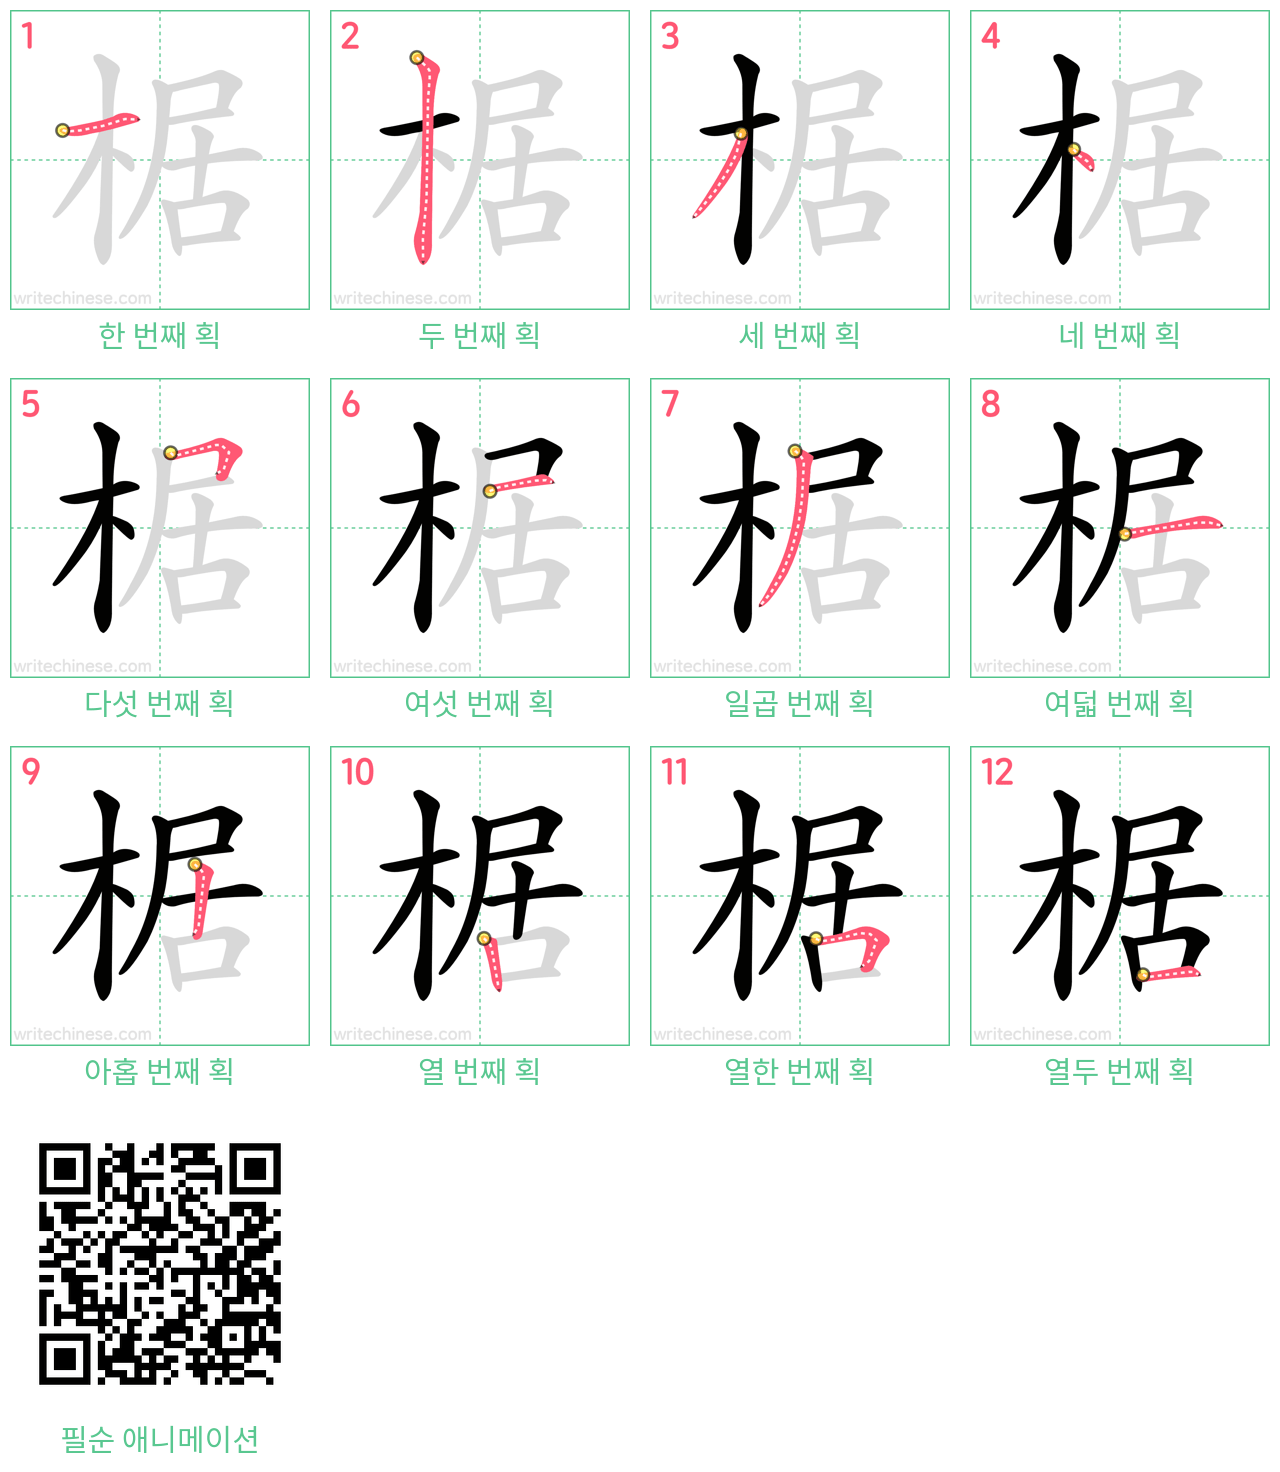 椐 step-by-step stroke order diagrams